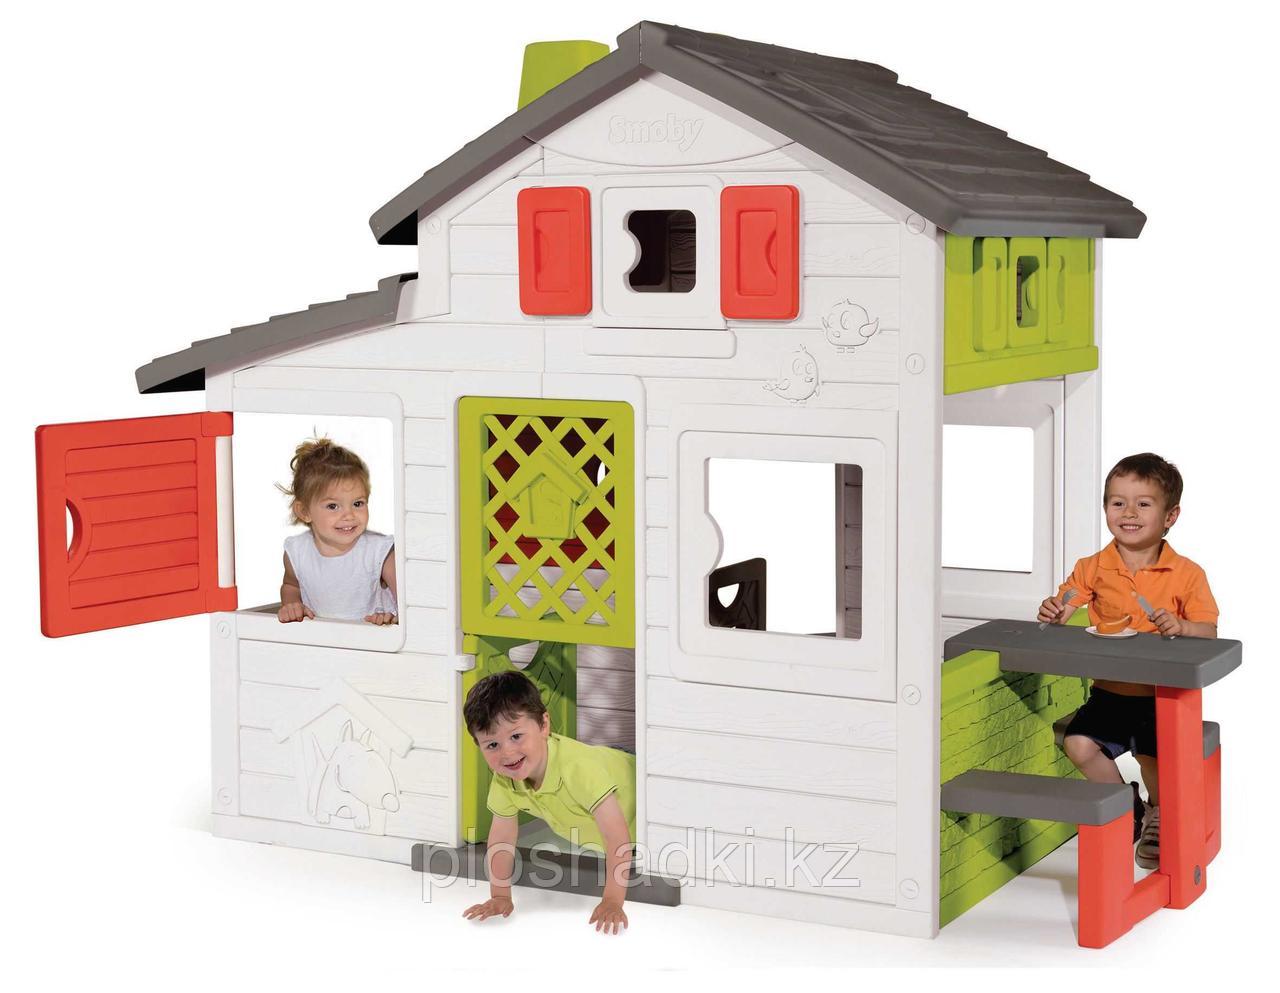 Домик для детей игрушечный, пластик, с дверью и звонком, со скамейкой и столиком